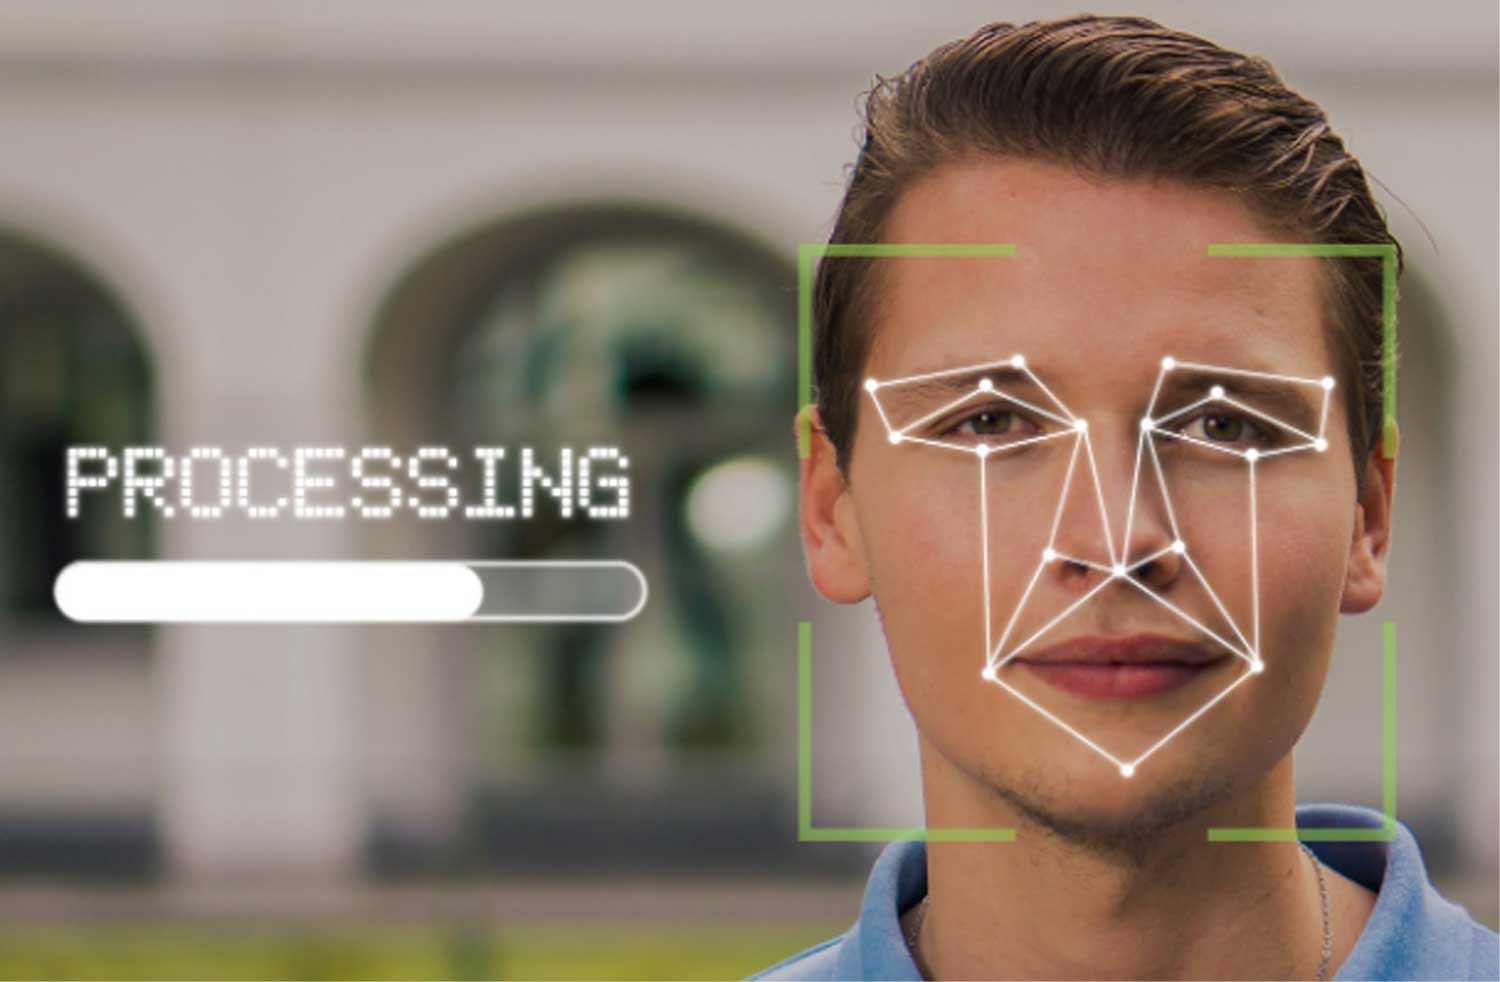 biometrisch-gezicht